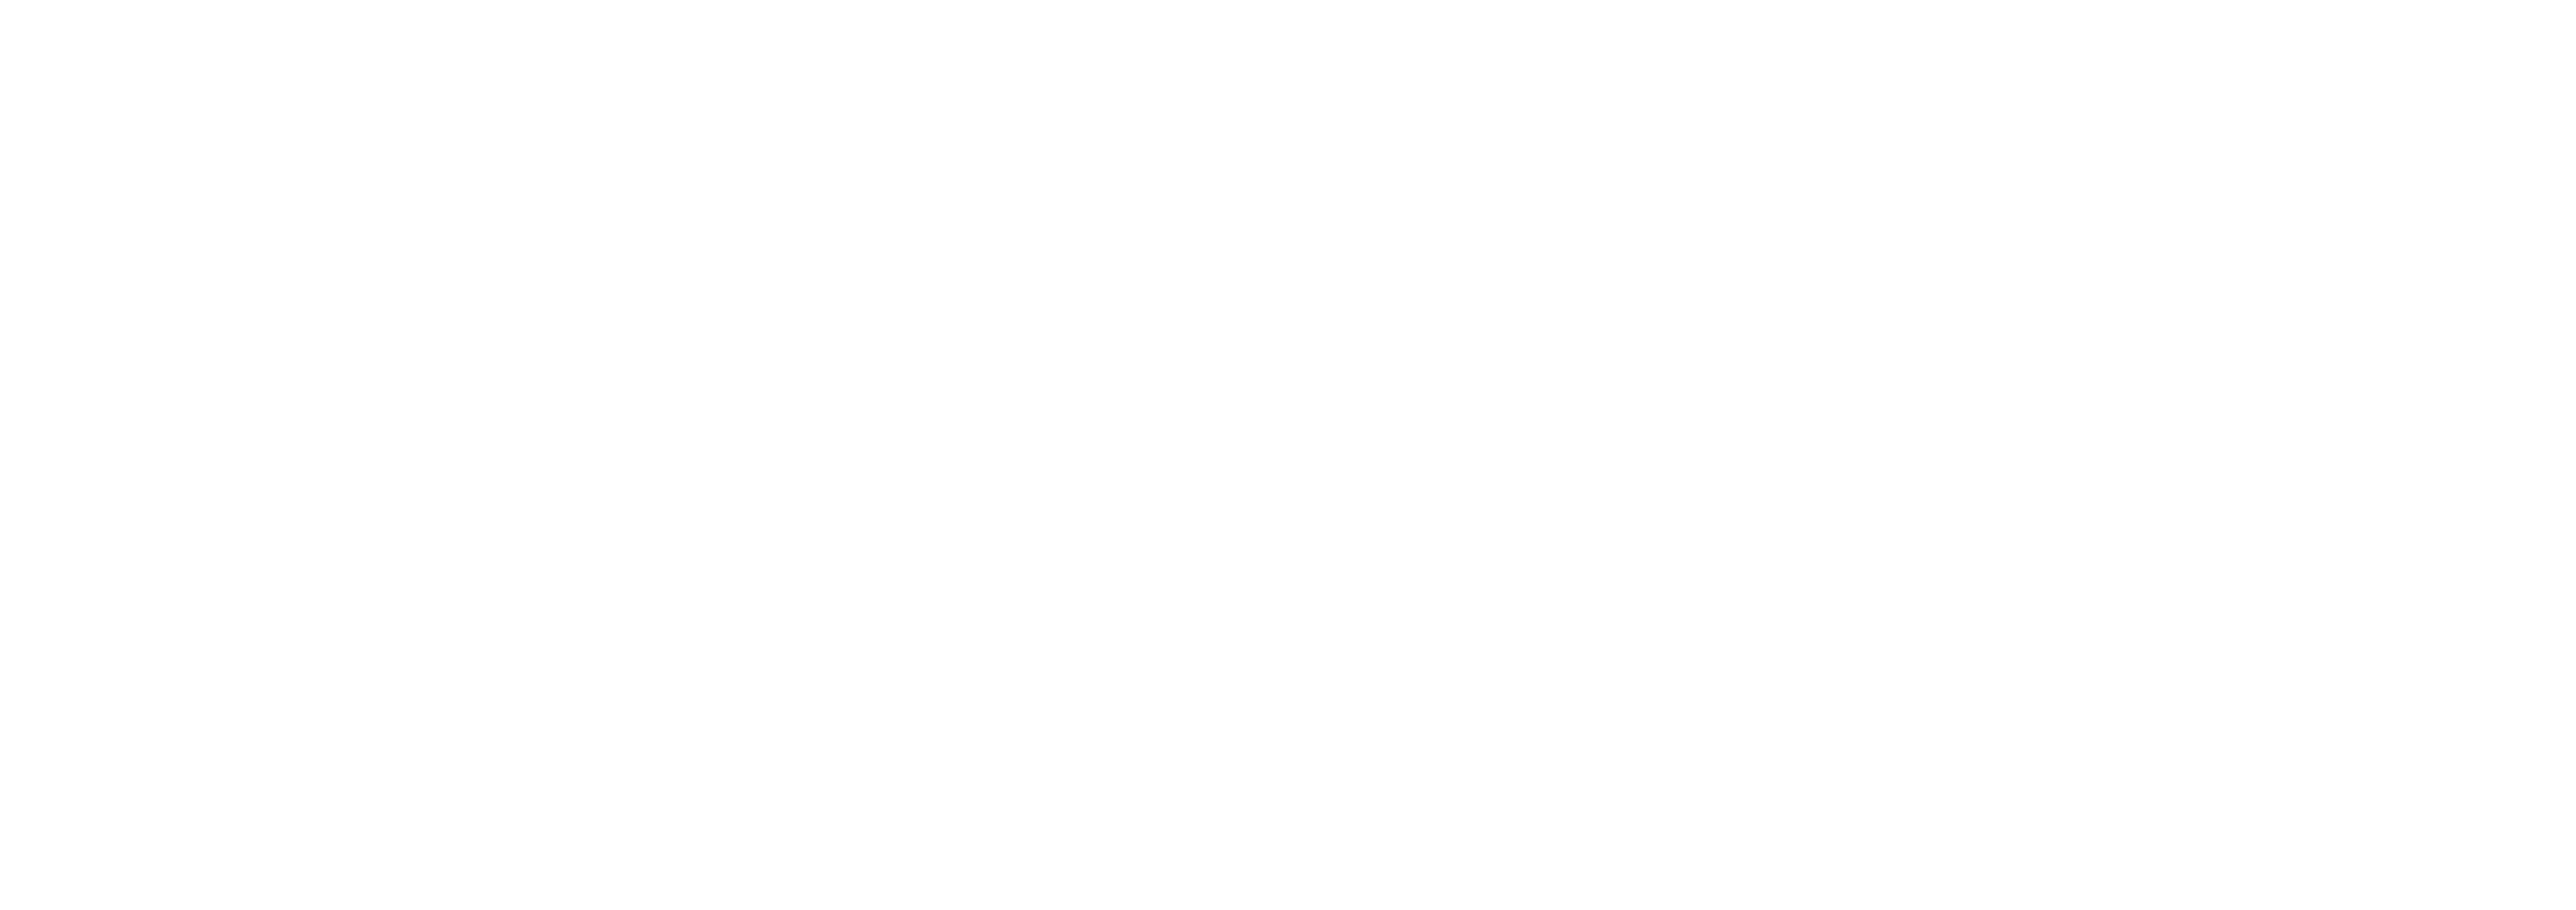 Wanda Fish